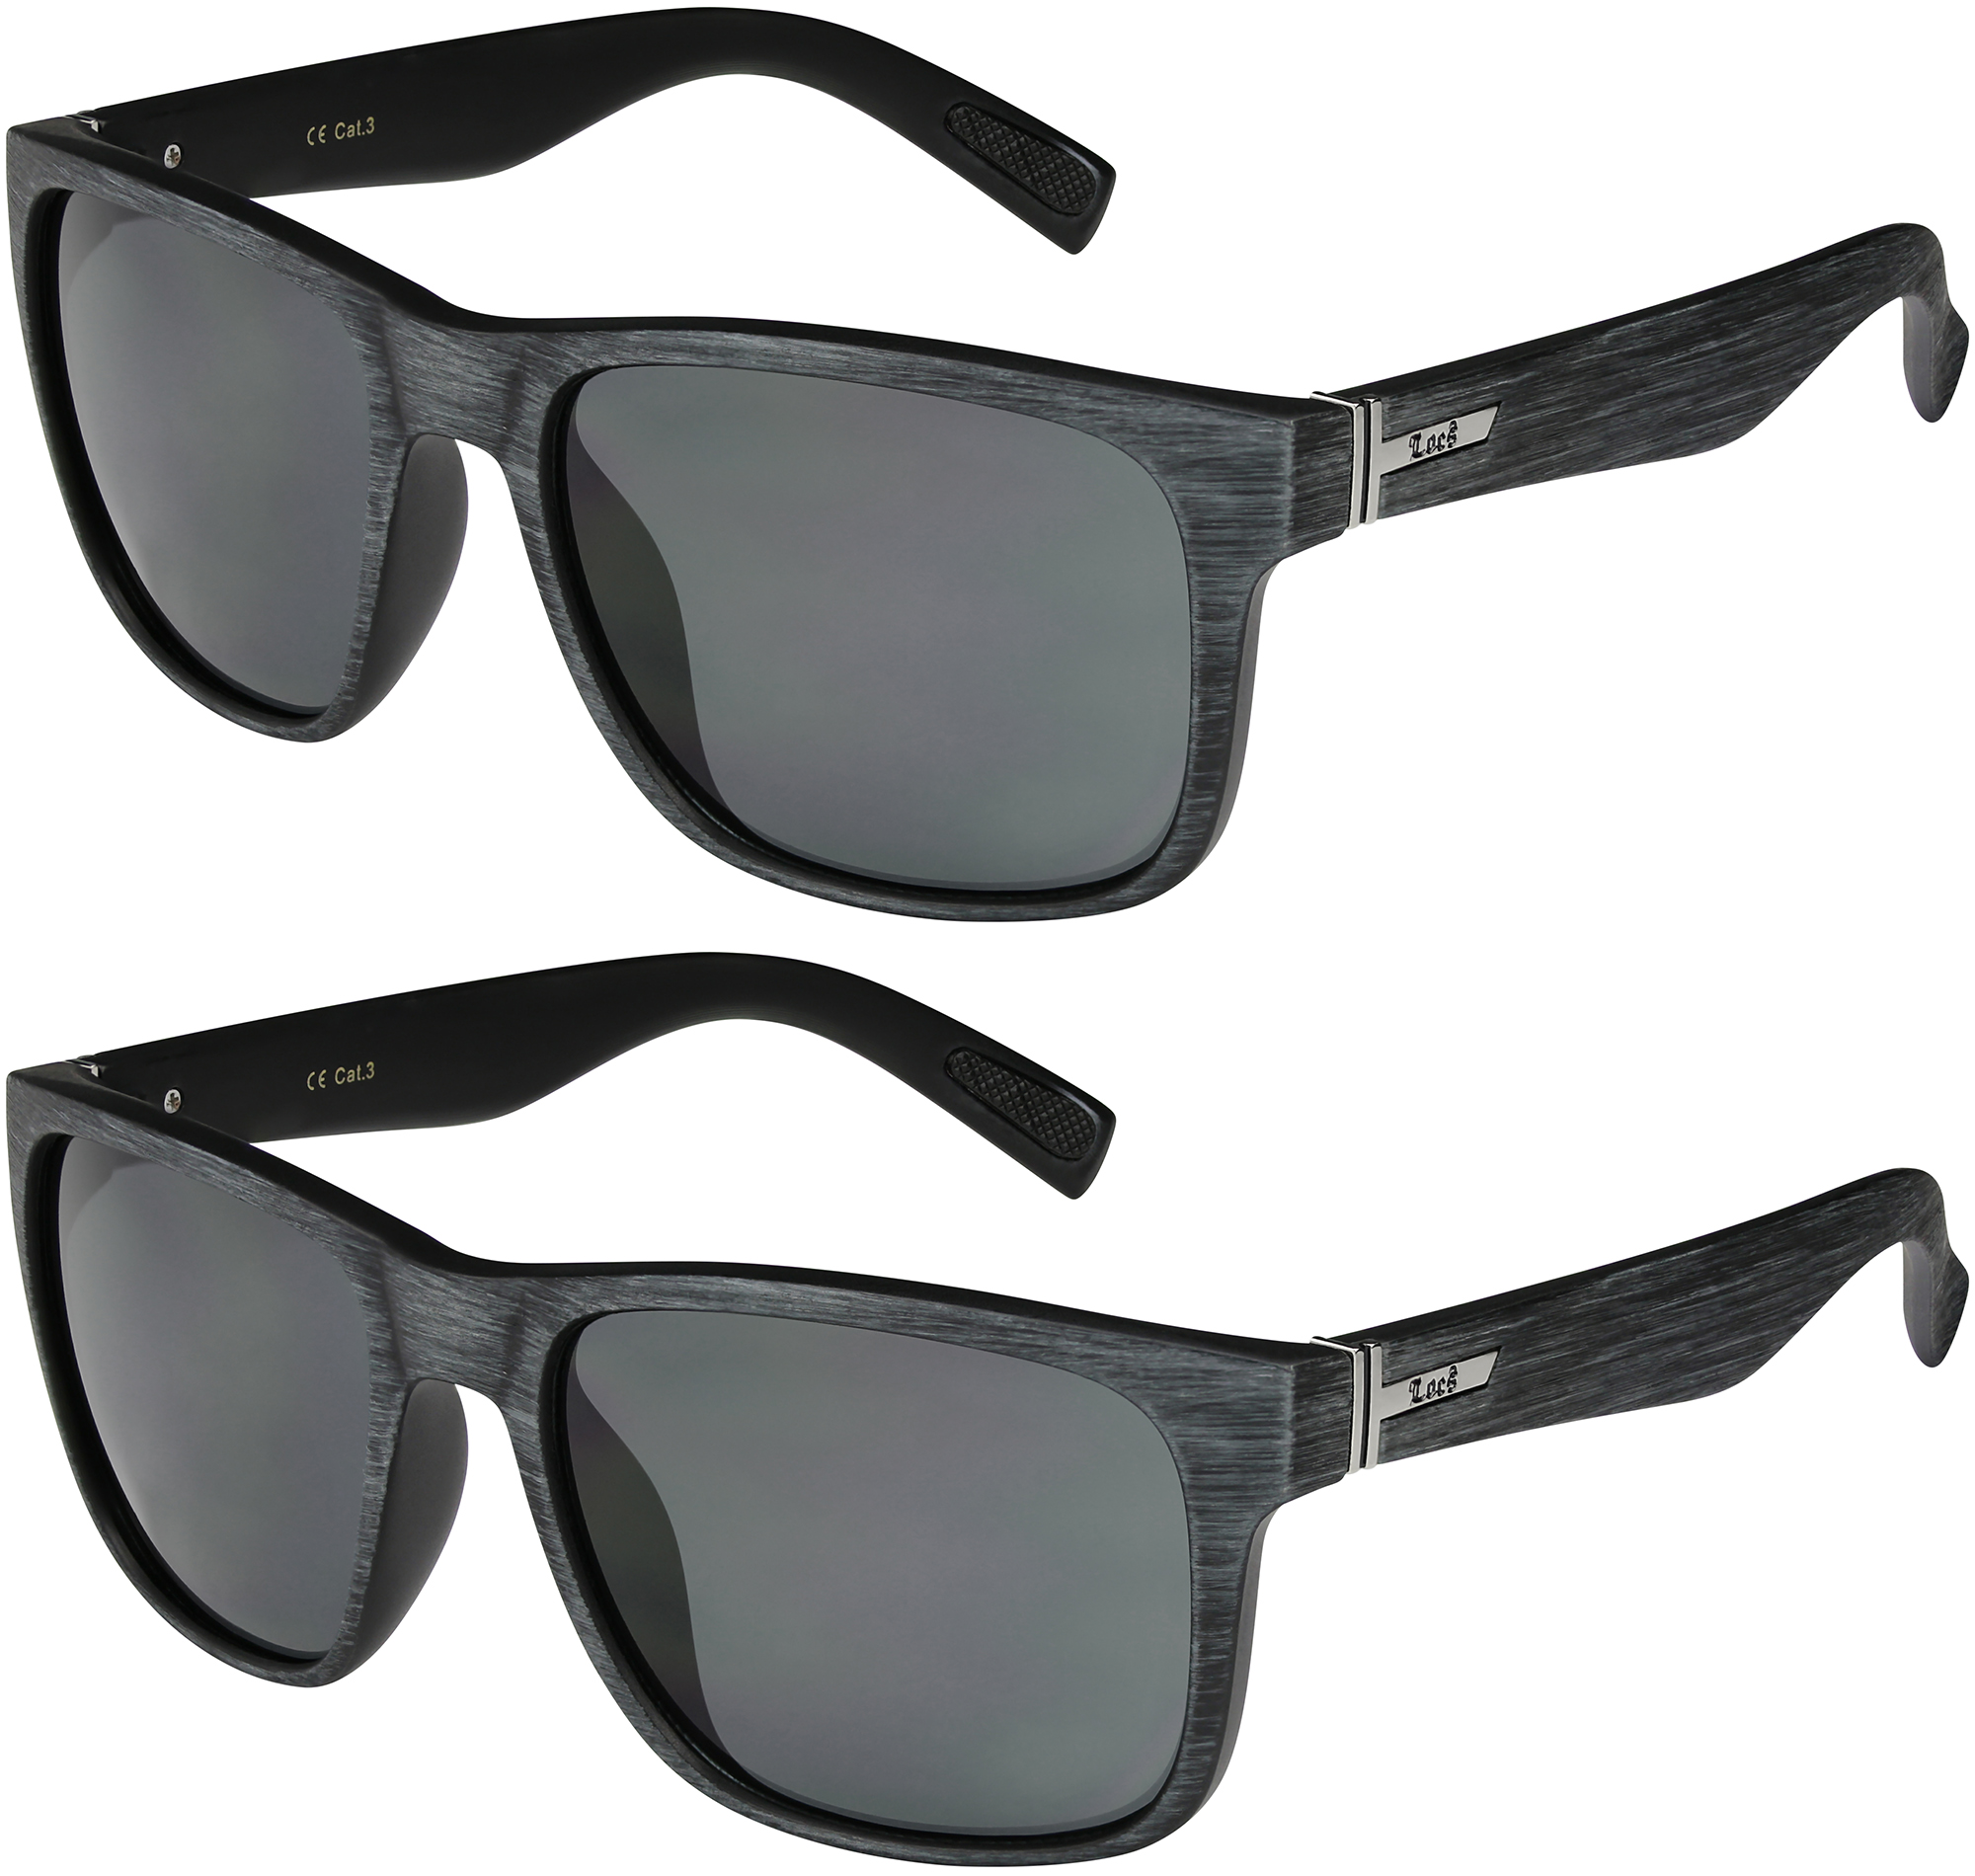 2er Pack Locs 2003 Choppers Sportbrille Sonnenbrille Männer Frauen schwarz weiß 